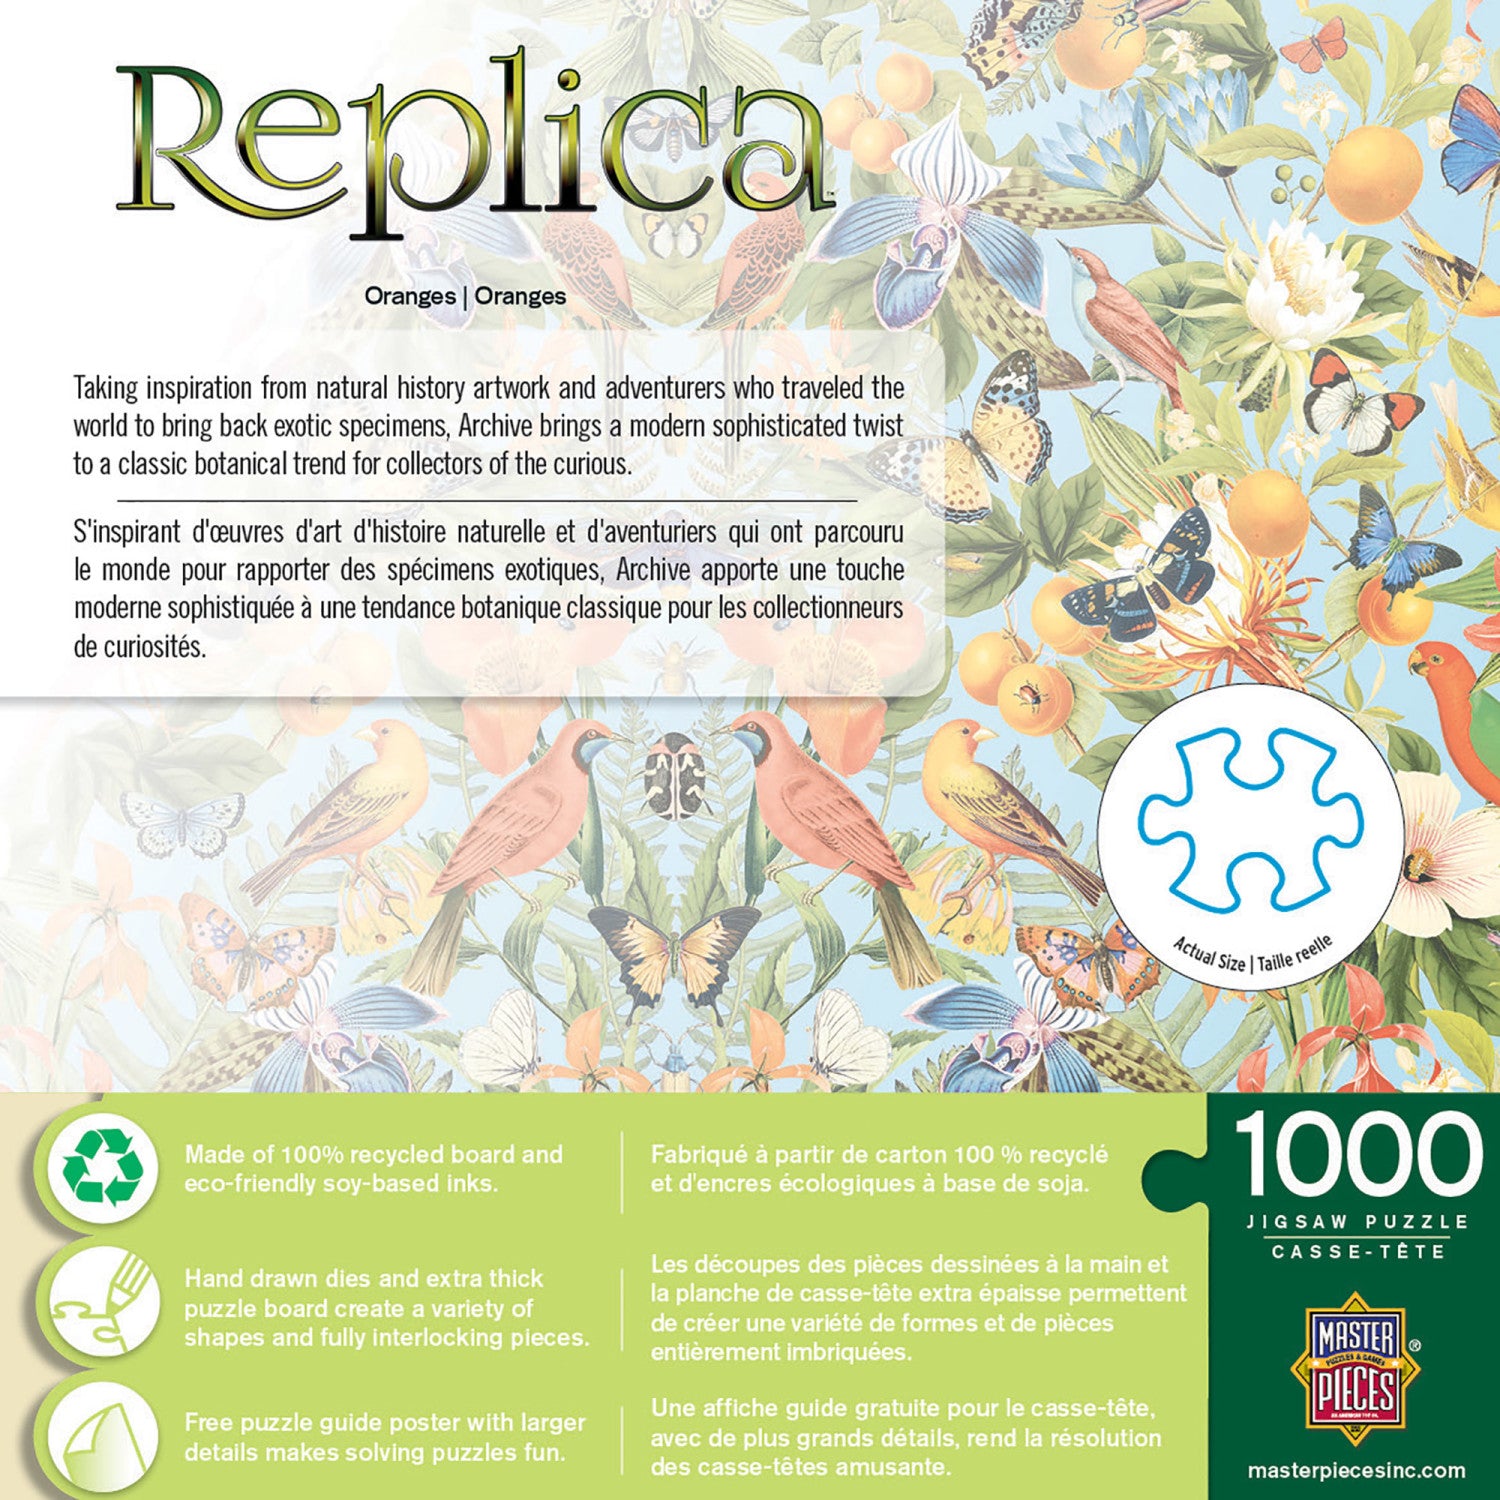 Replica - Oranges 1000 Piece Puzzle